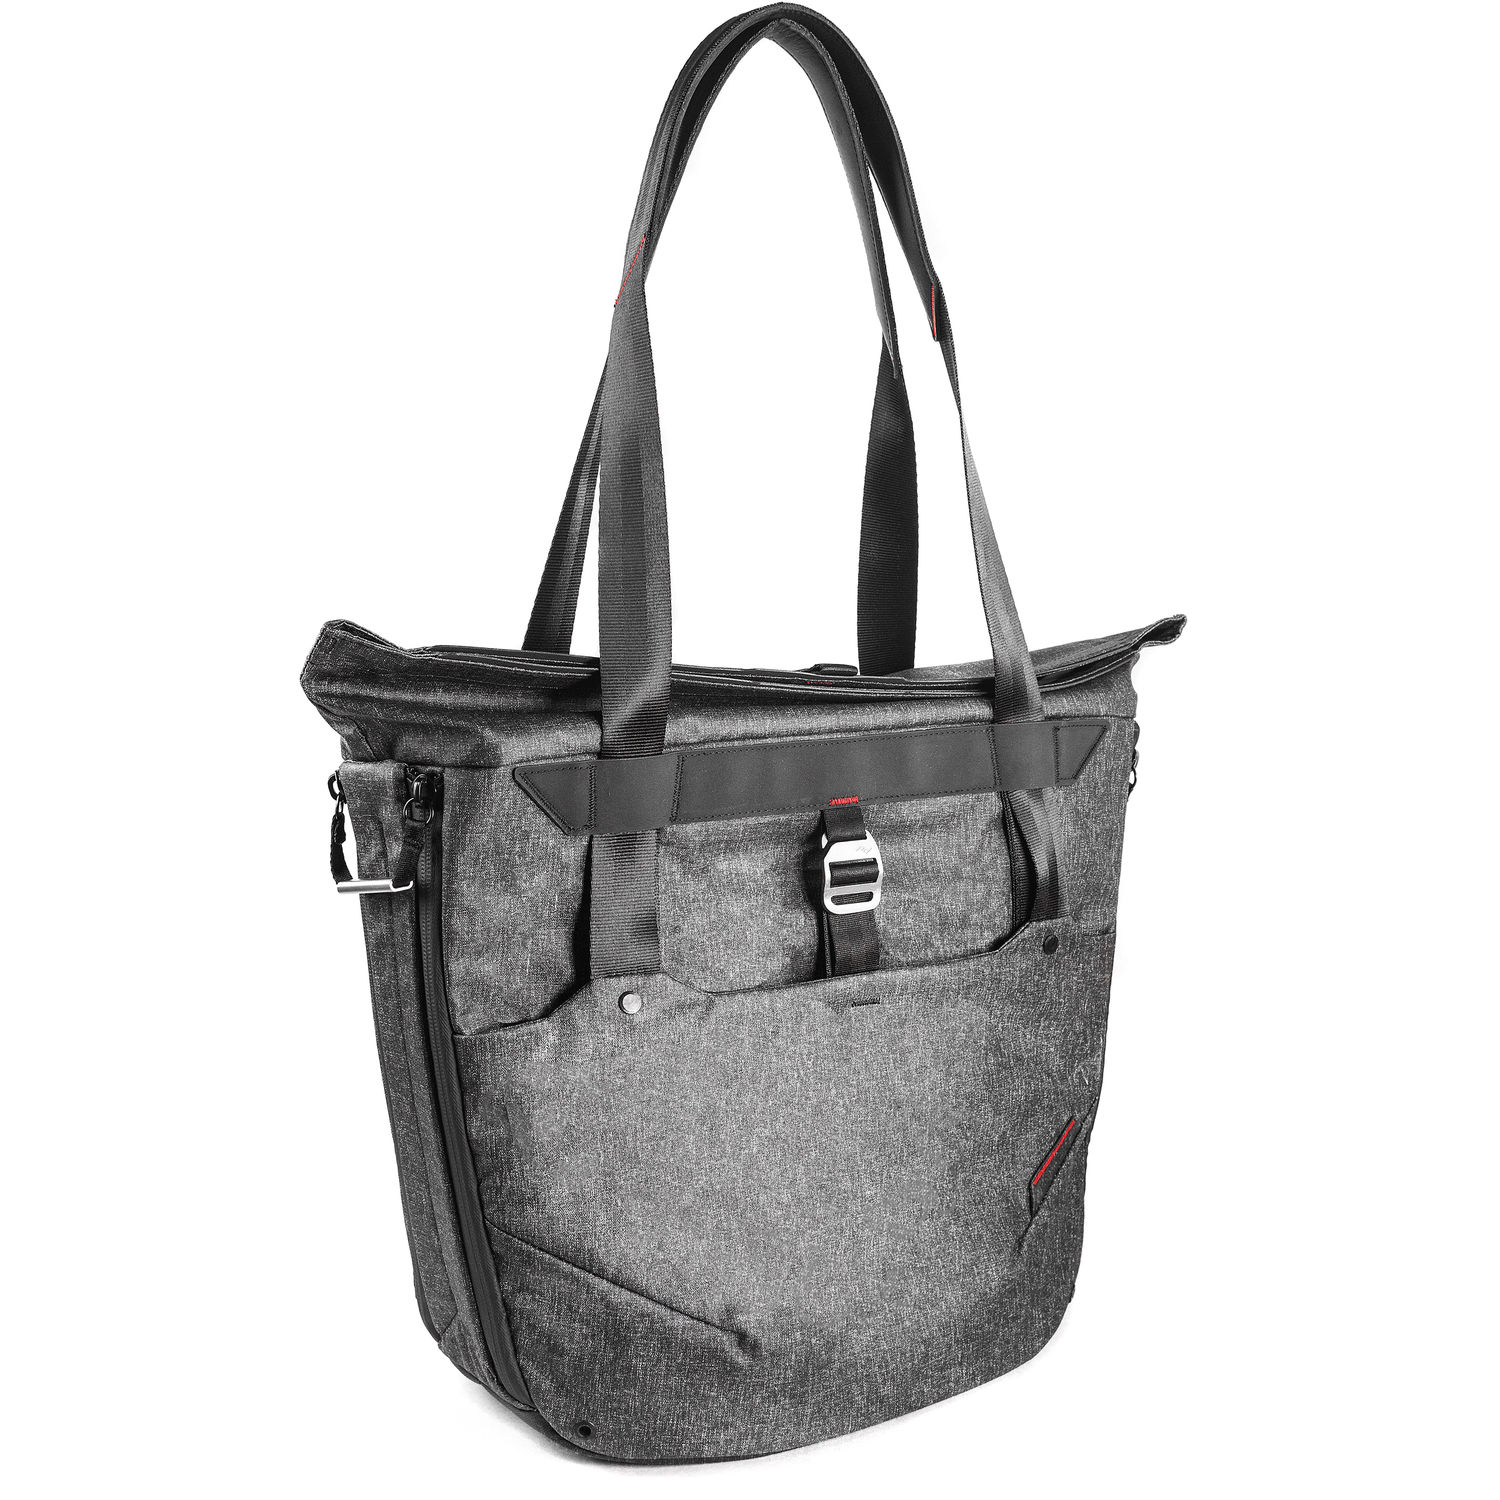 Peak Design Everyday Tote Bag 20L (Charcoal)